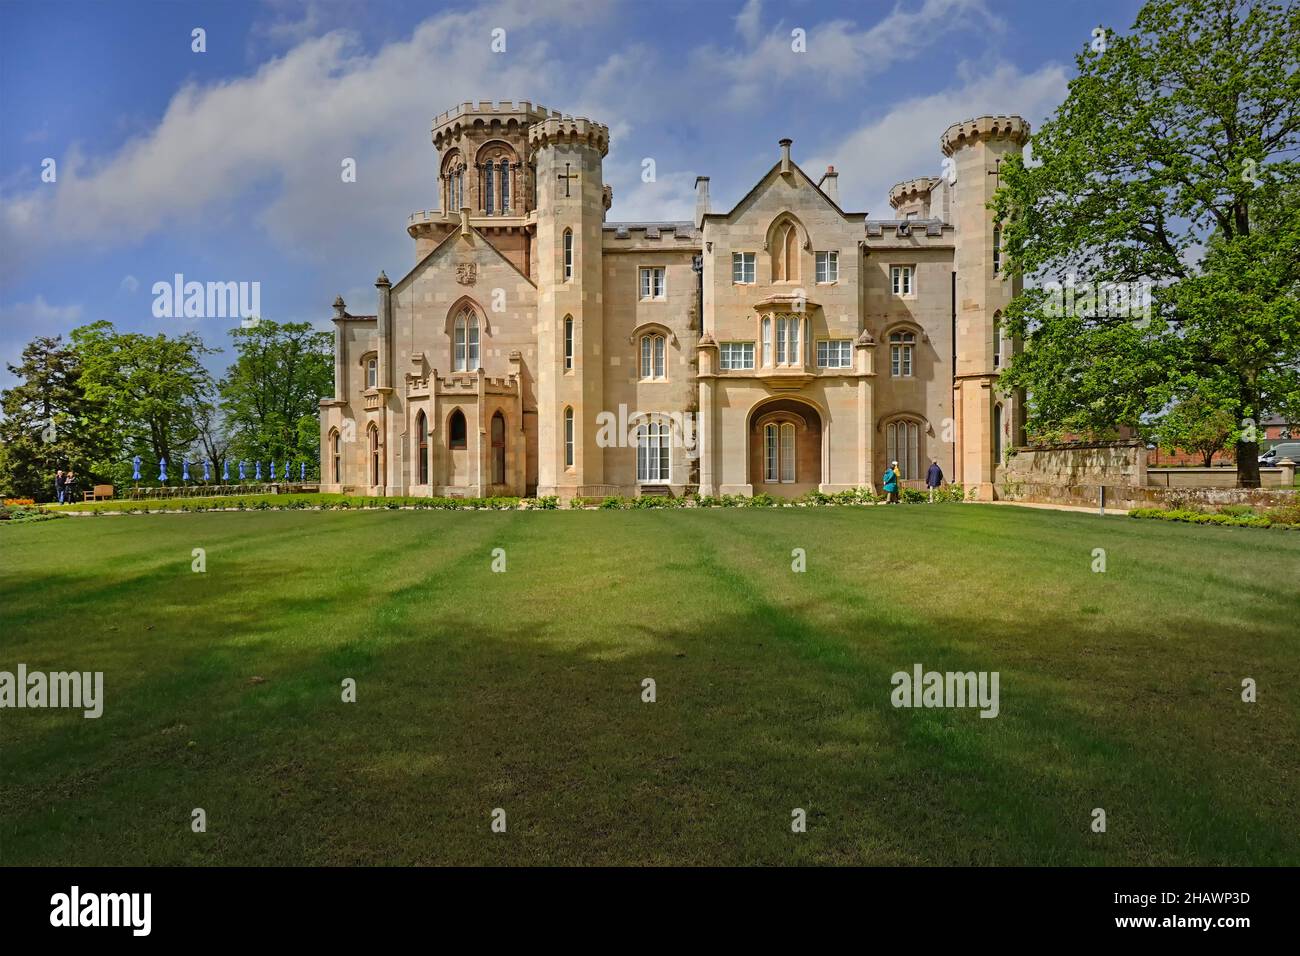 Teil der Gärten und Parklandschaft um das historische Studley Castle denkmalgeschützte Landhaus, das ein Warners Hotel in Warwickshire, England, errichtet Stockfoto